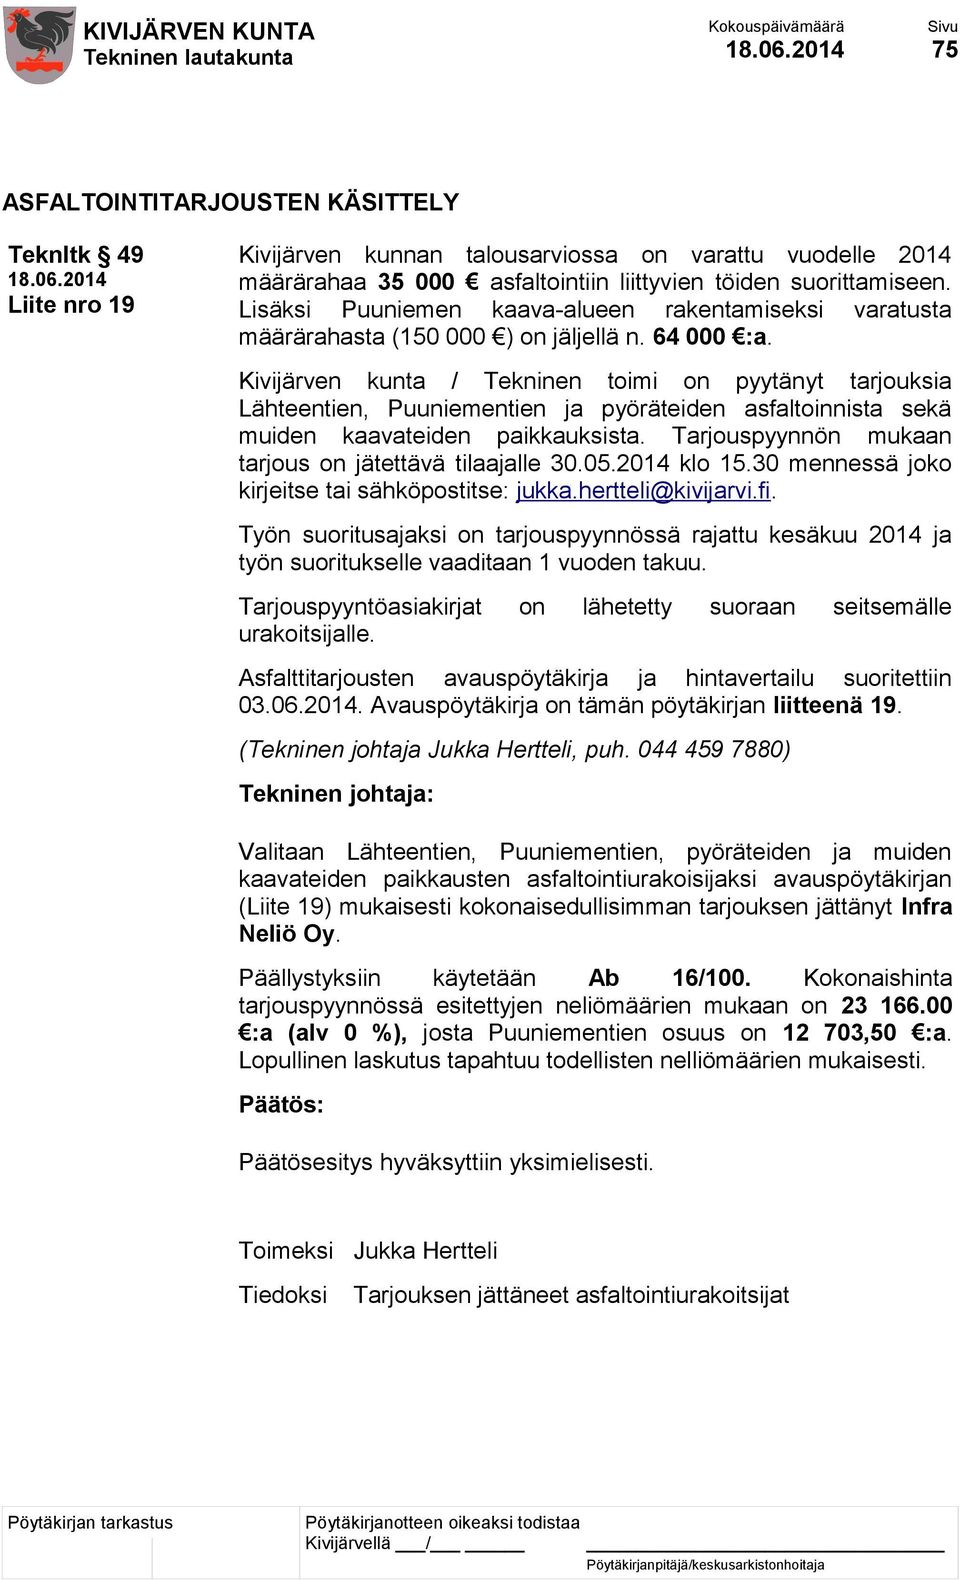 Kivijärven kunta / Tekninen toimi on pyytänyt tarjouksia Lähteentien, Puuniementien ja pyöräteiden asfaltoinnista sekä muiden kaavateiden paikkauksista.